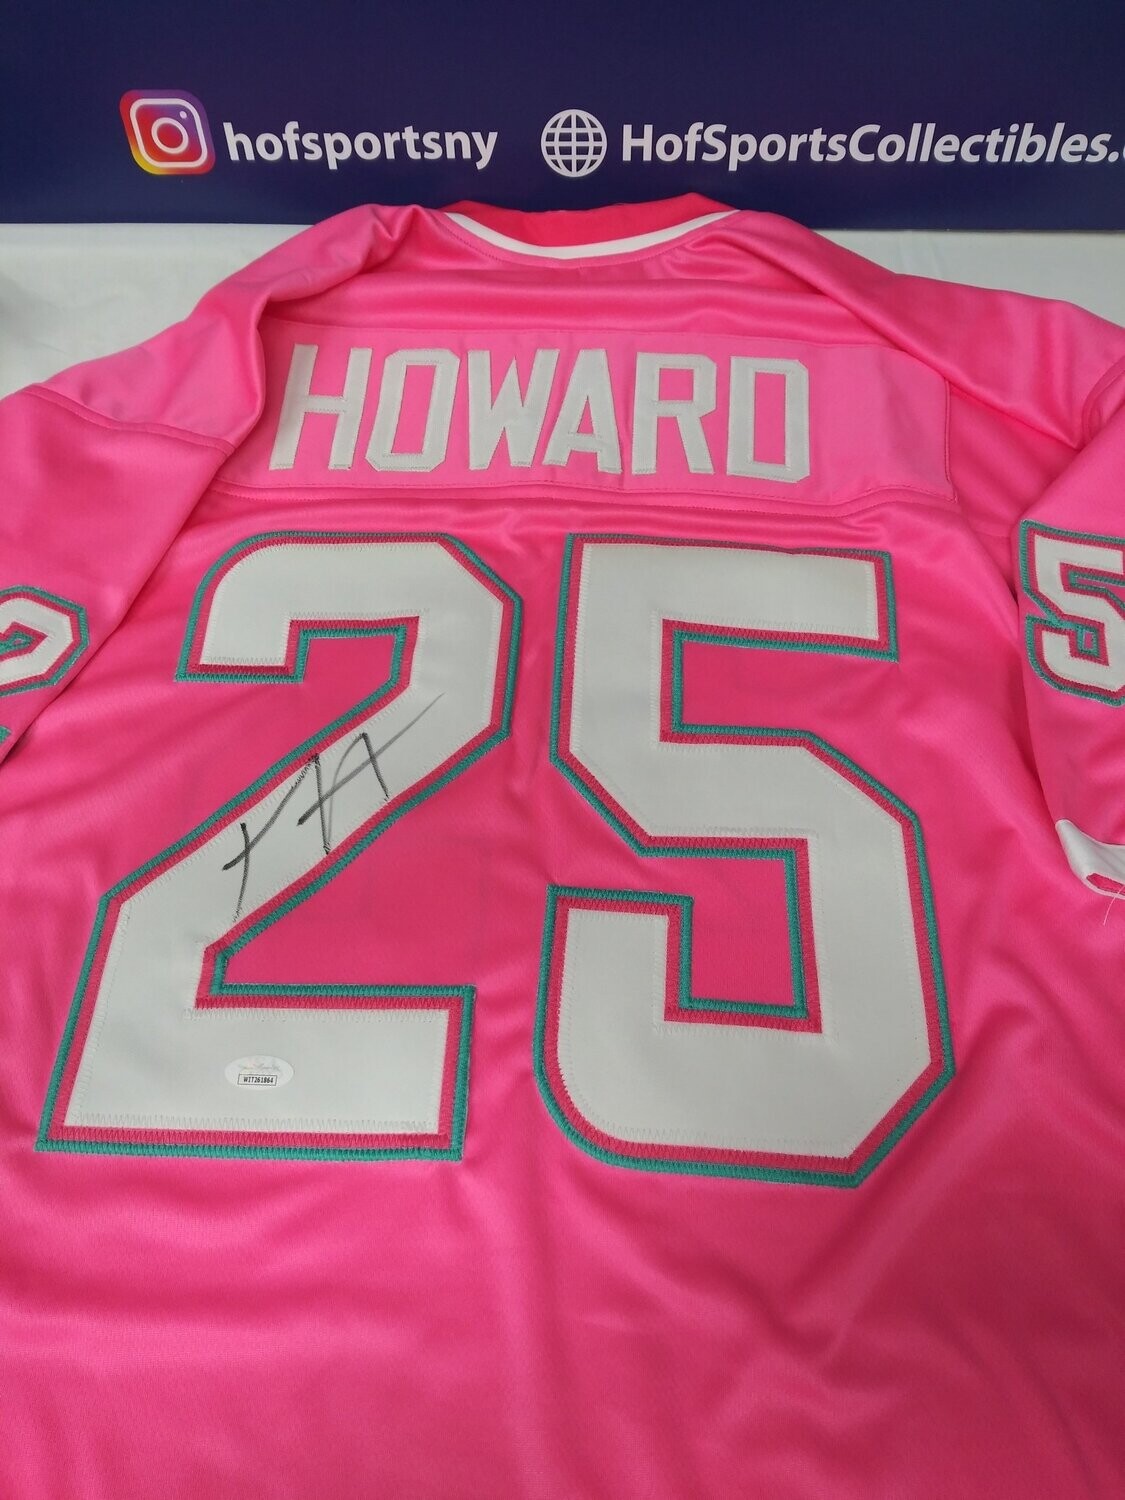 xavien howard signed jersey